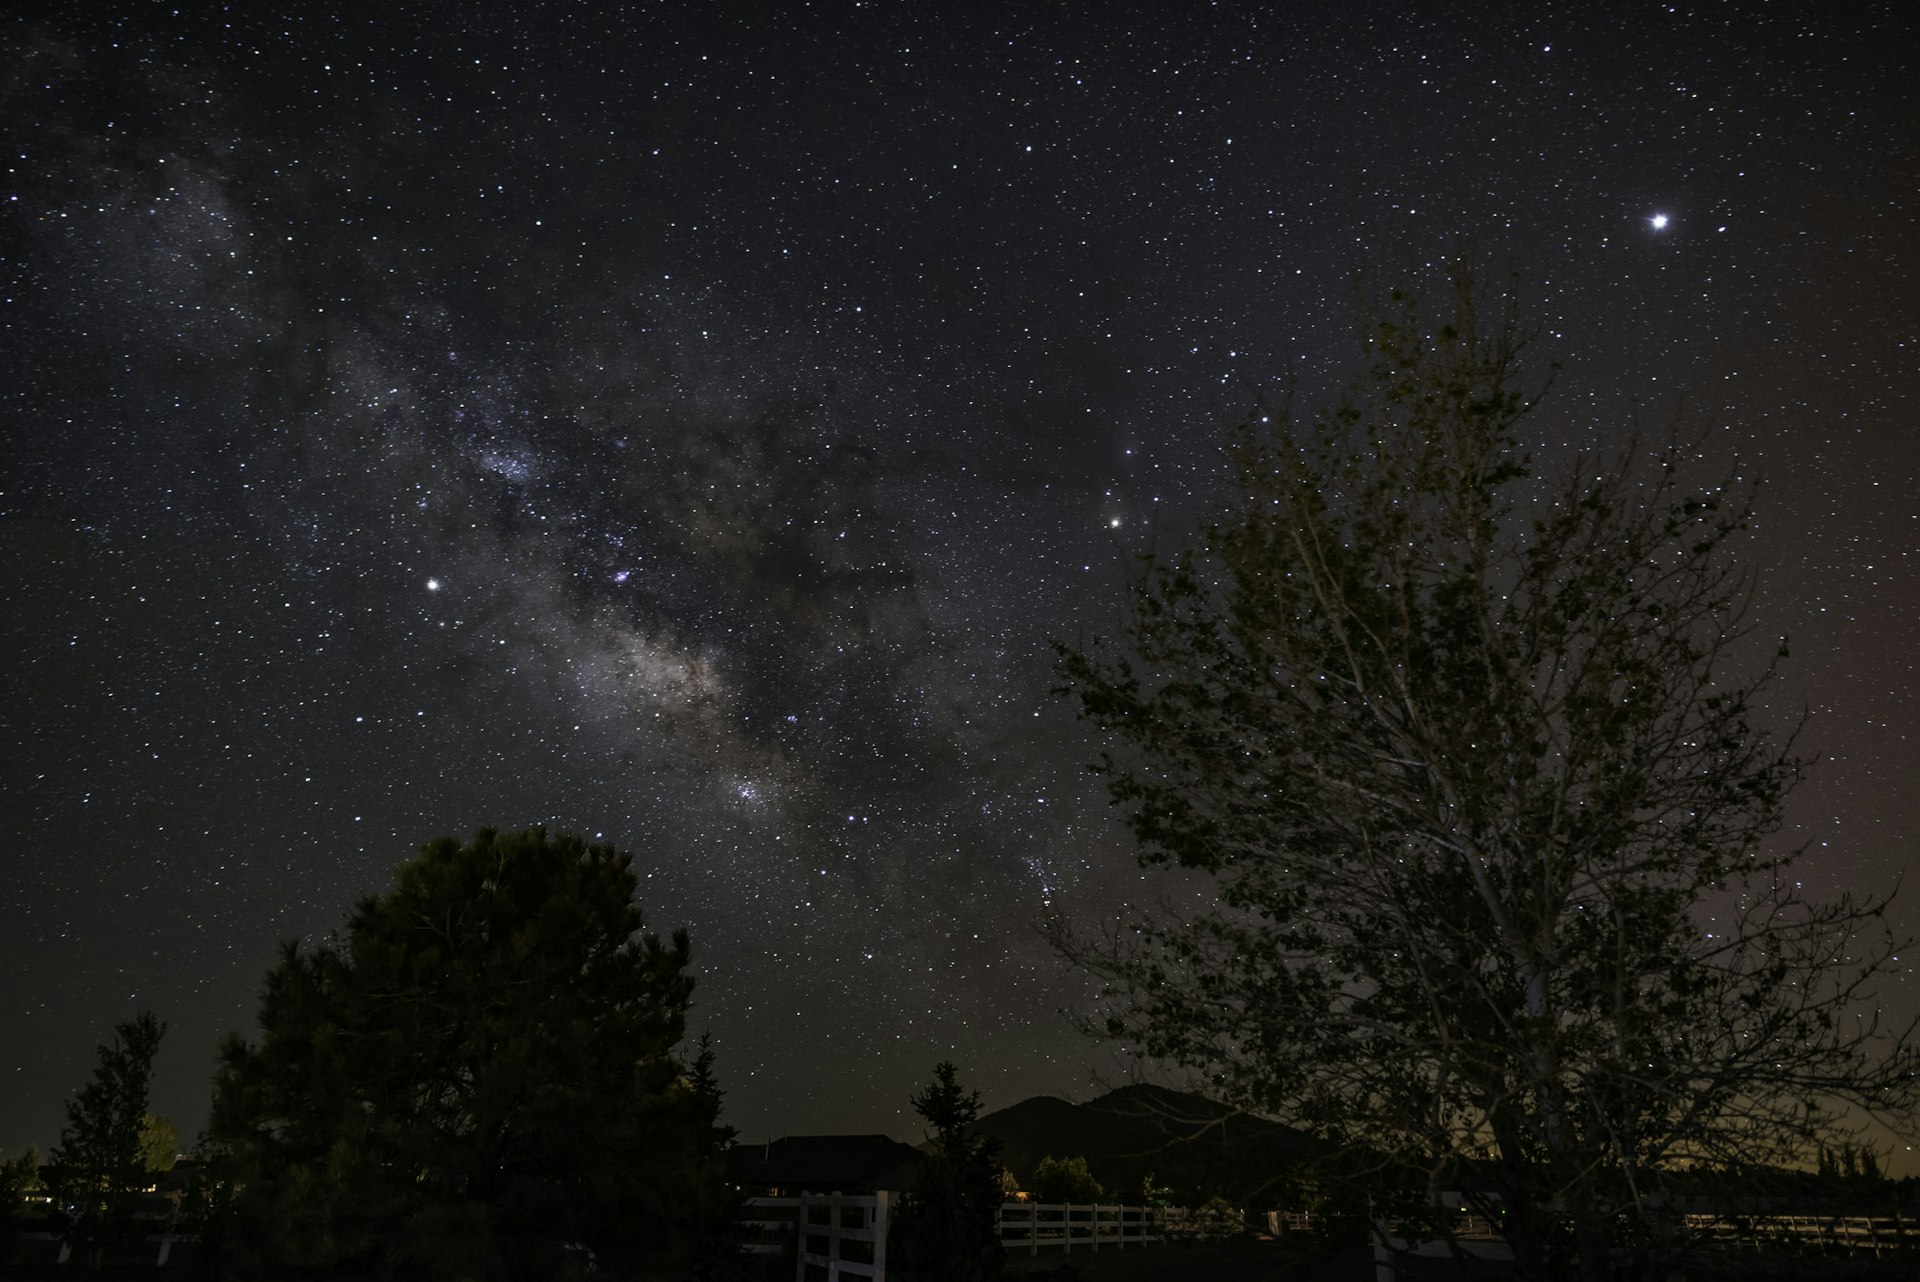 Stars above Flagstaff Arlzona at night. 